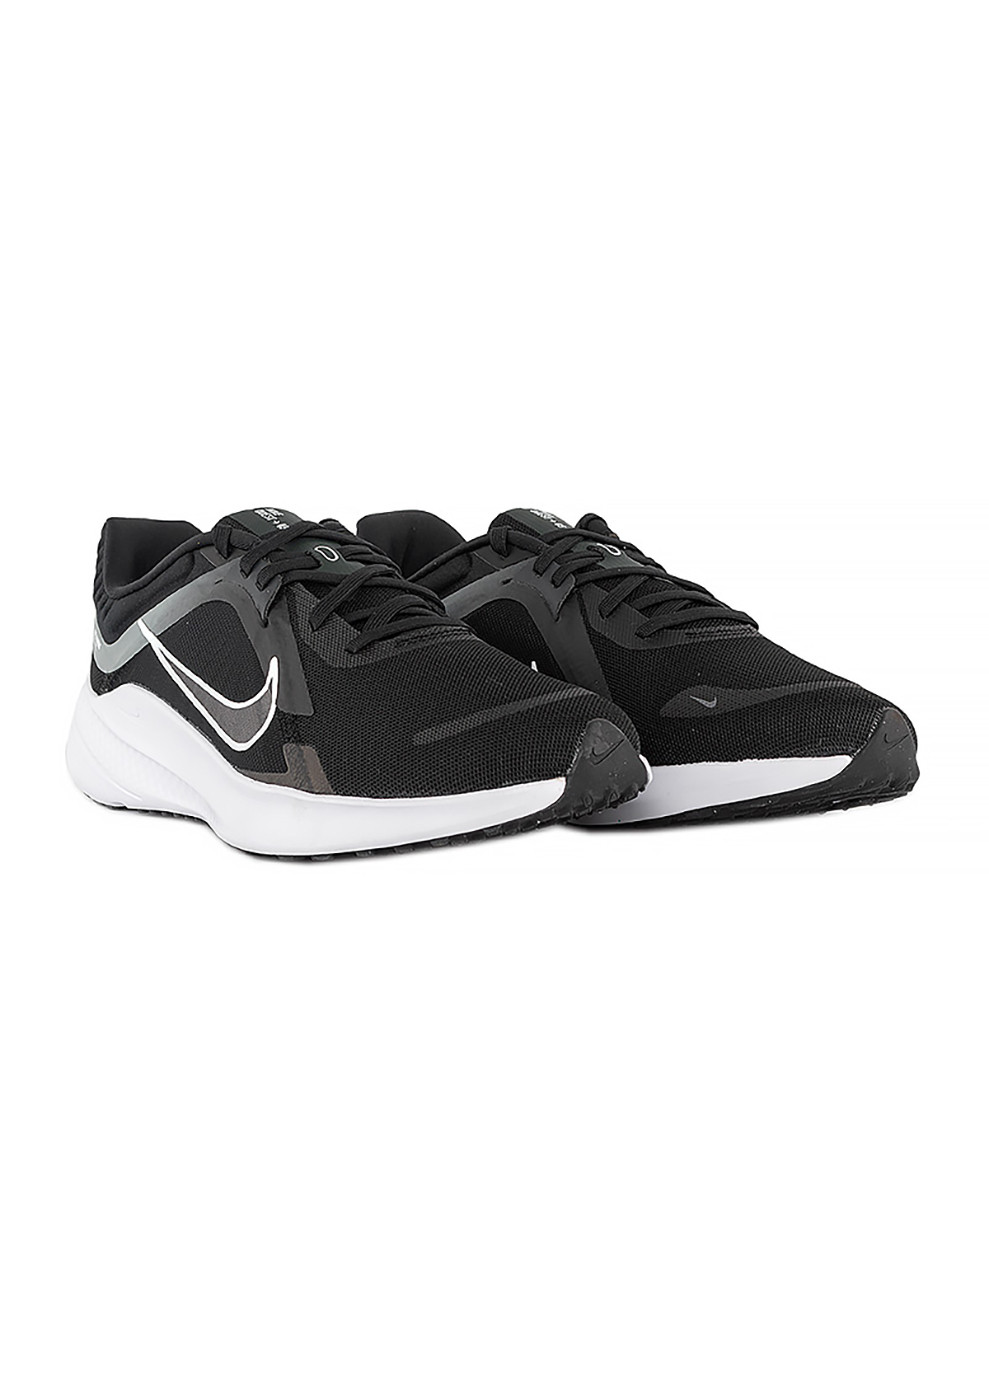 Черные демисезонные мужские кроссовки quest 5 черный Nike